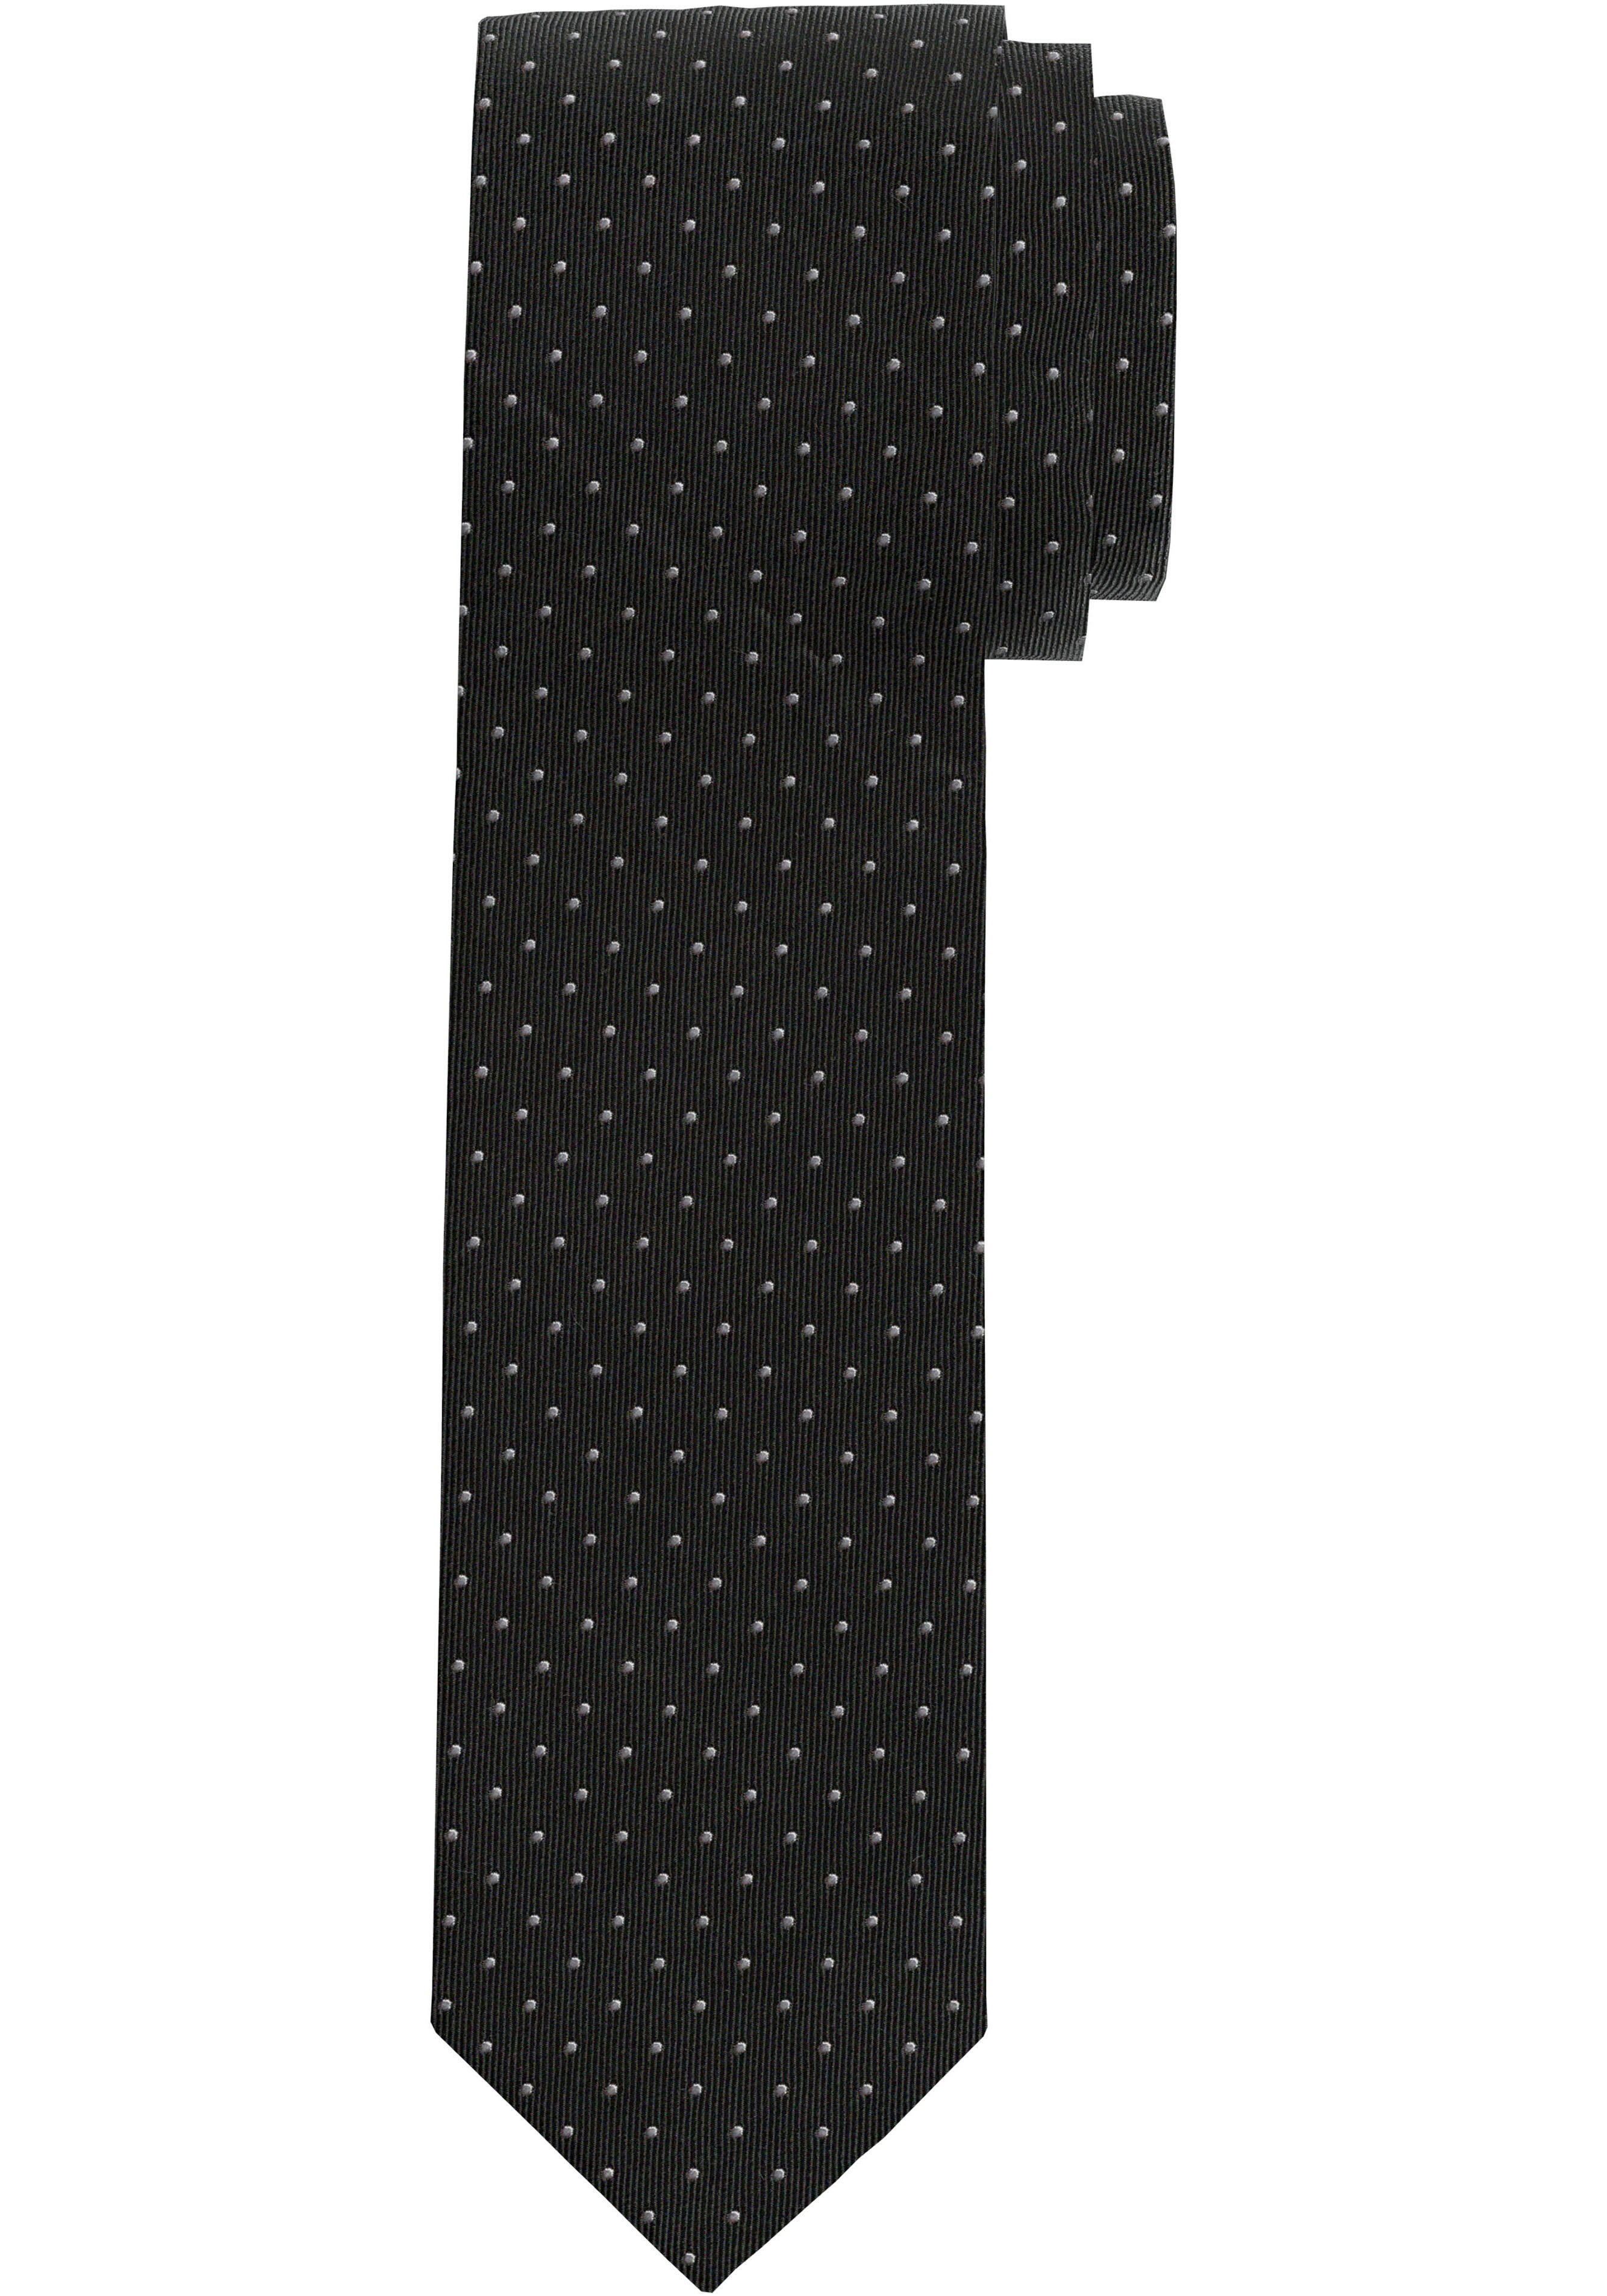 OLYMP Krawatte Seidenkrawatte schwarz